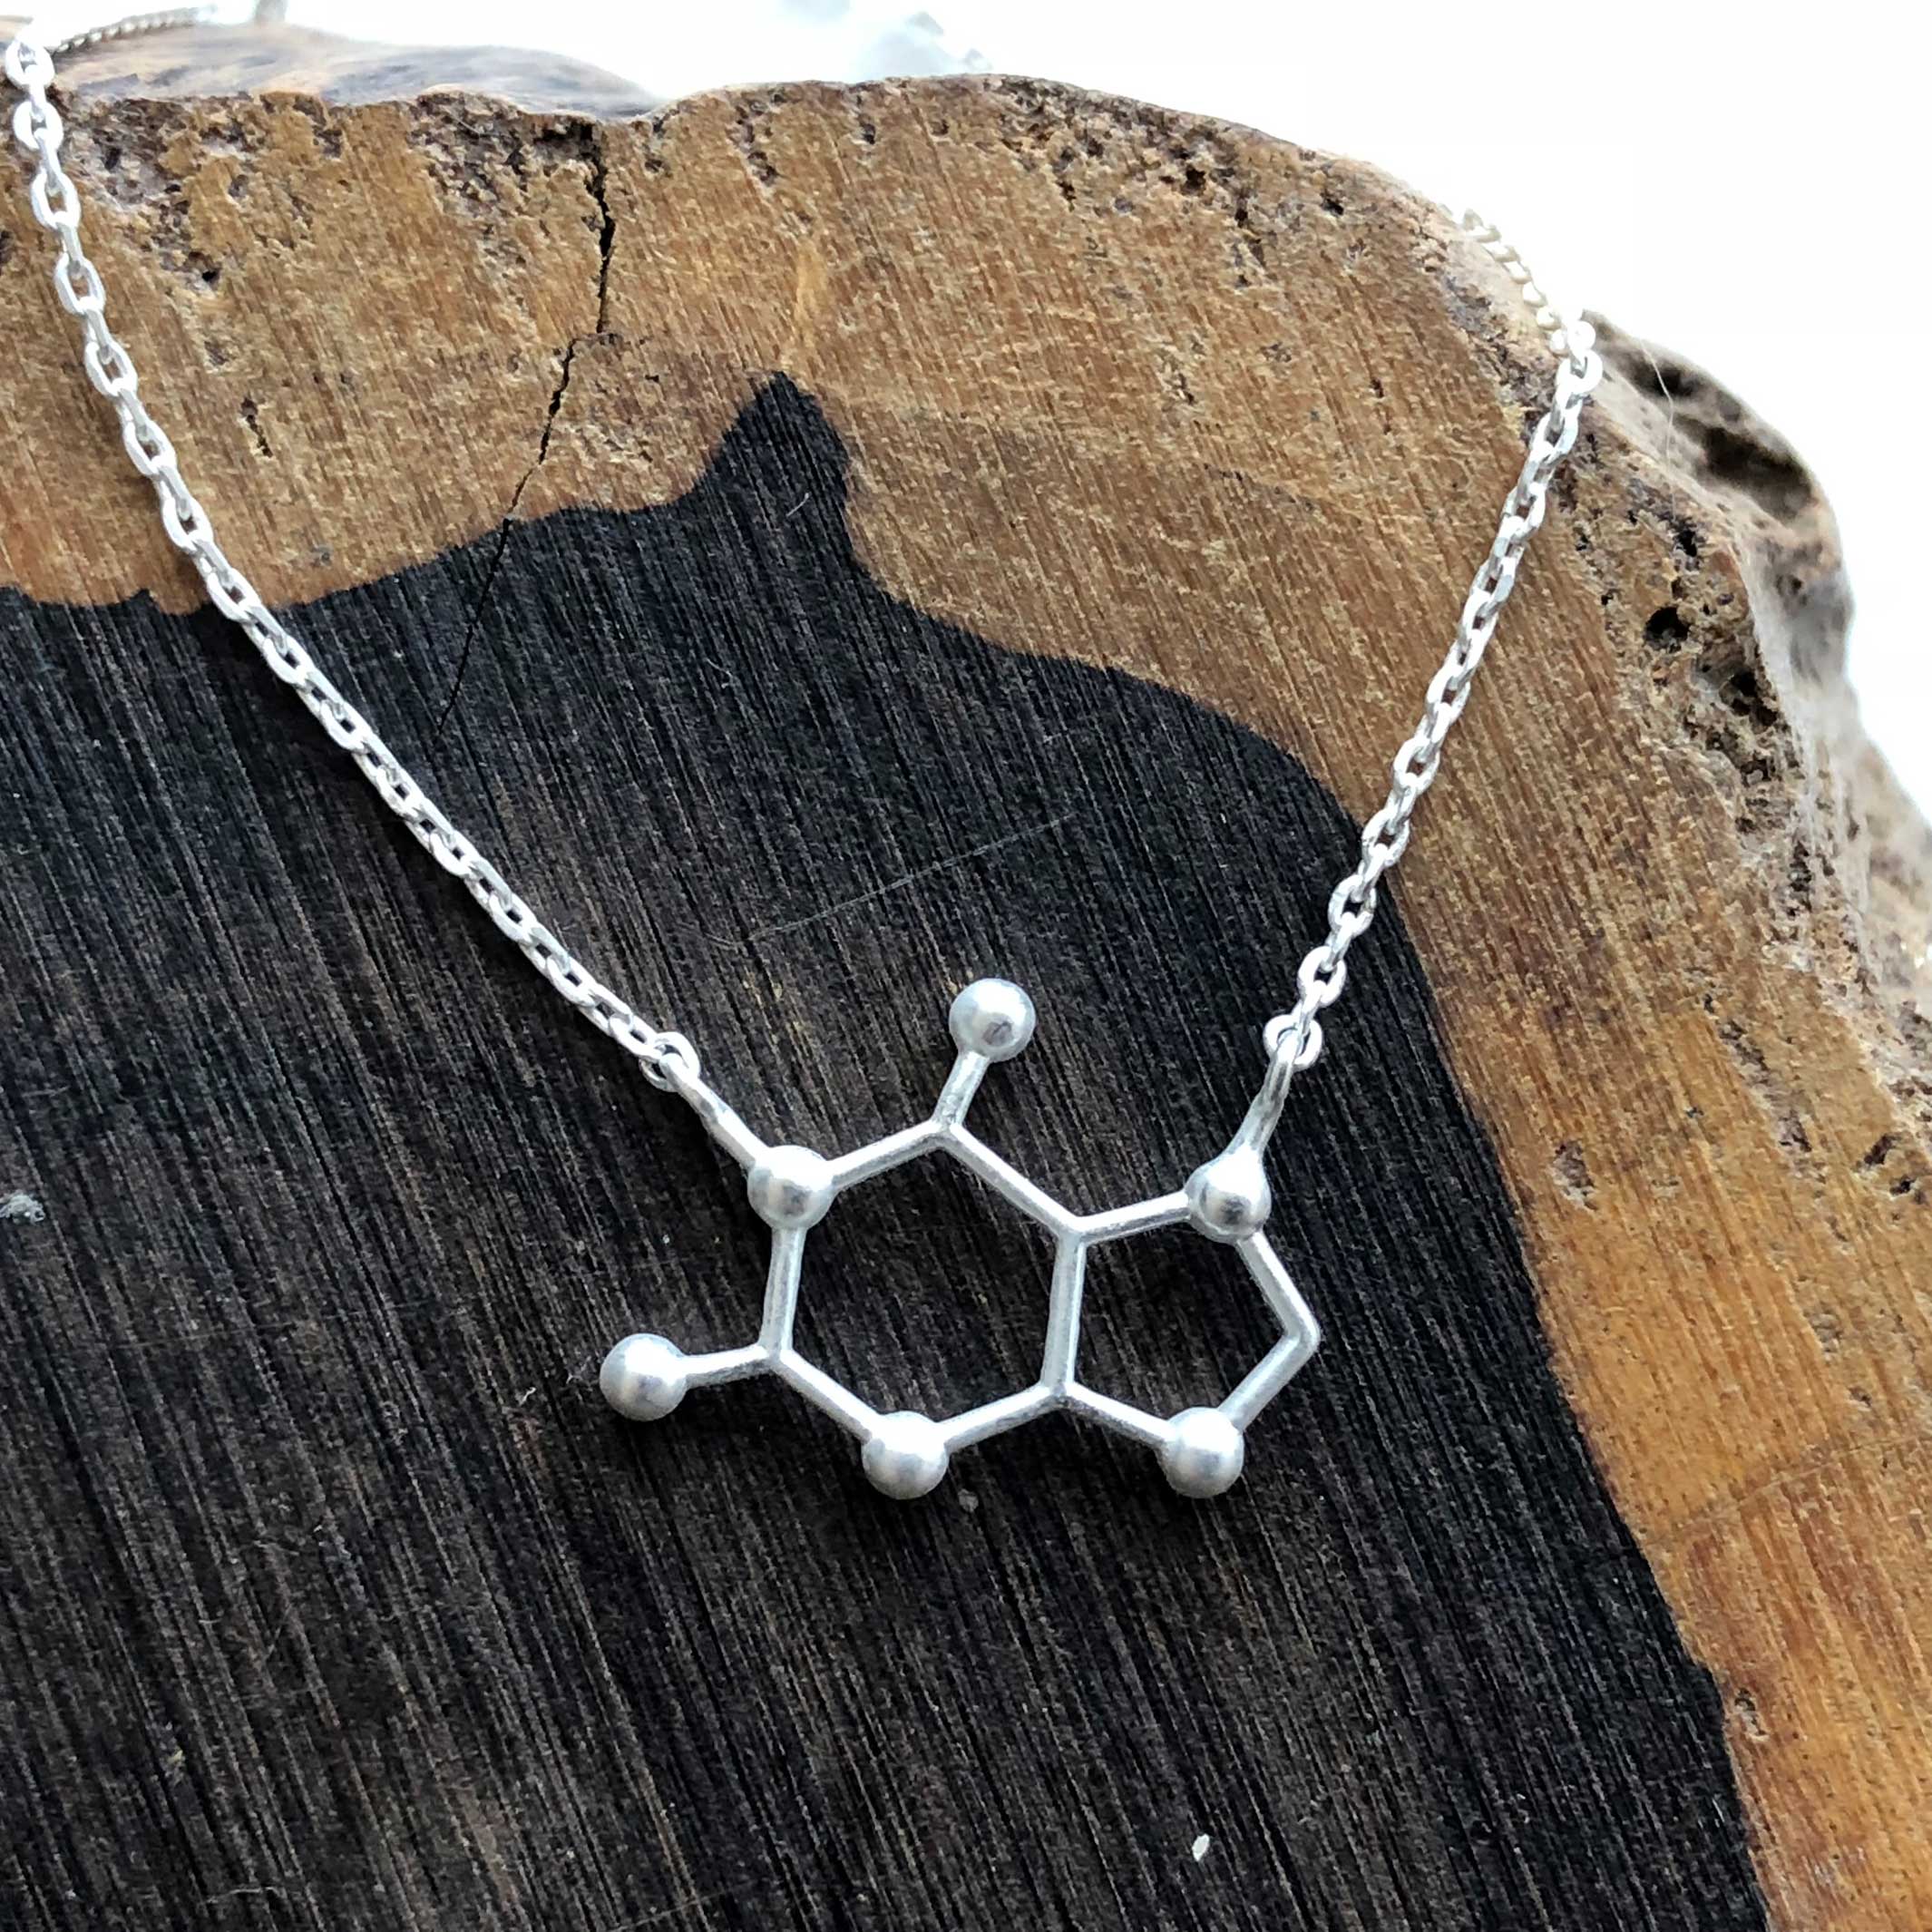 Buy 925 Sterling Silver Serotonin Molecule Necklace Online in India - Etsy